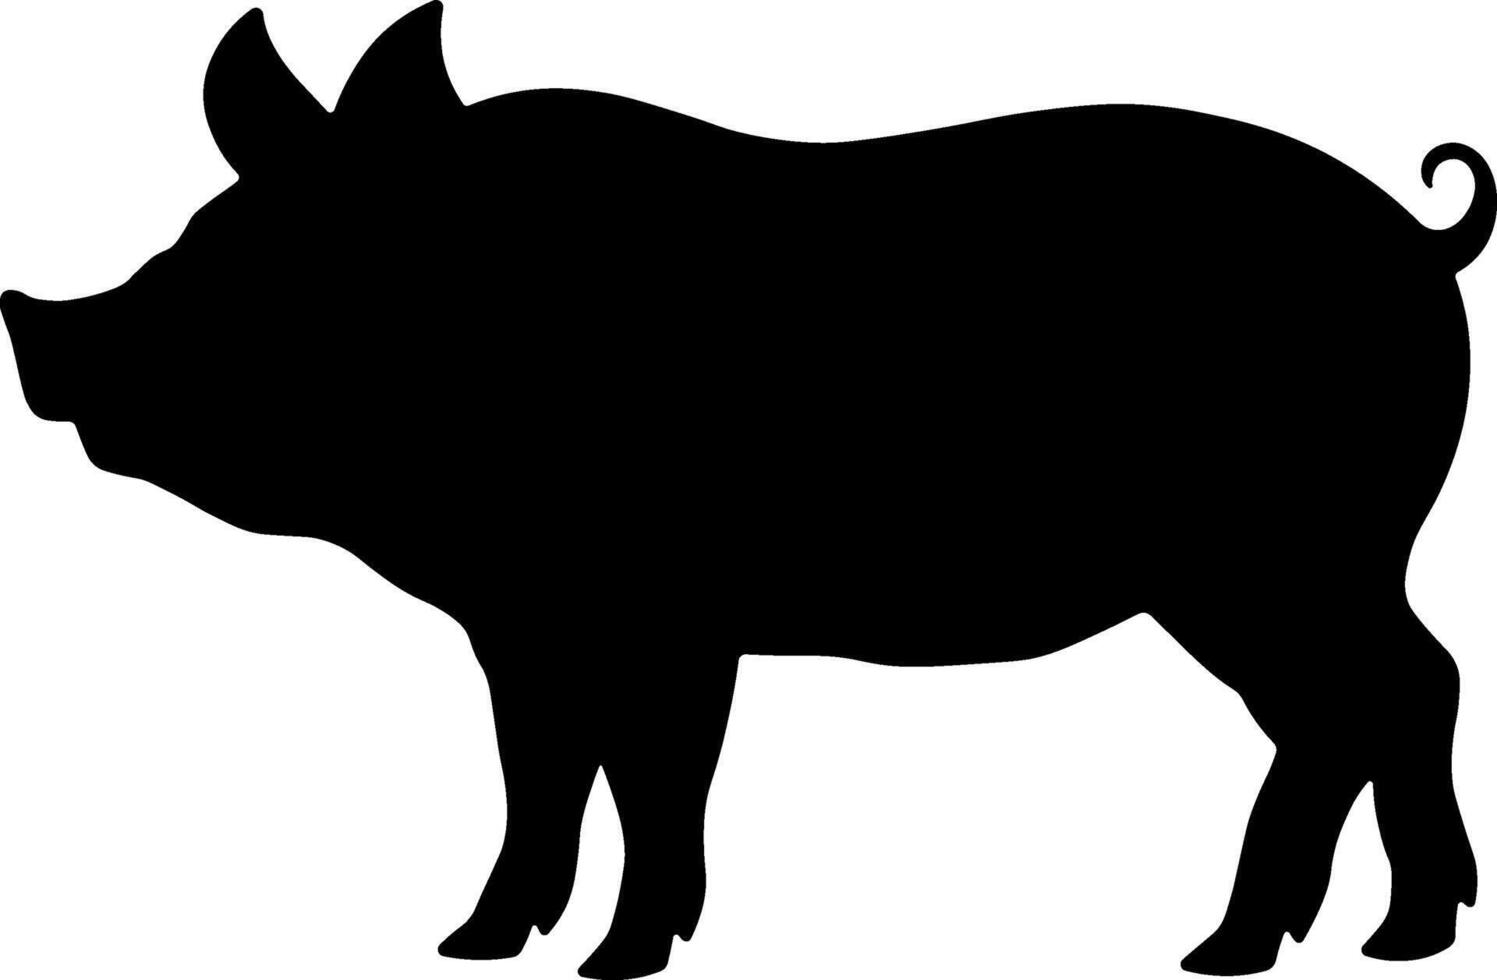 svart silhuett av en gris eller smågris utan bakgrund vektor